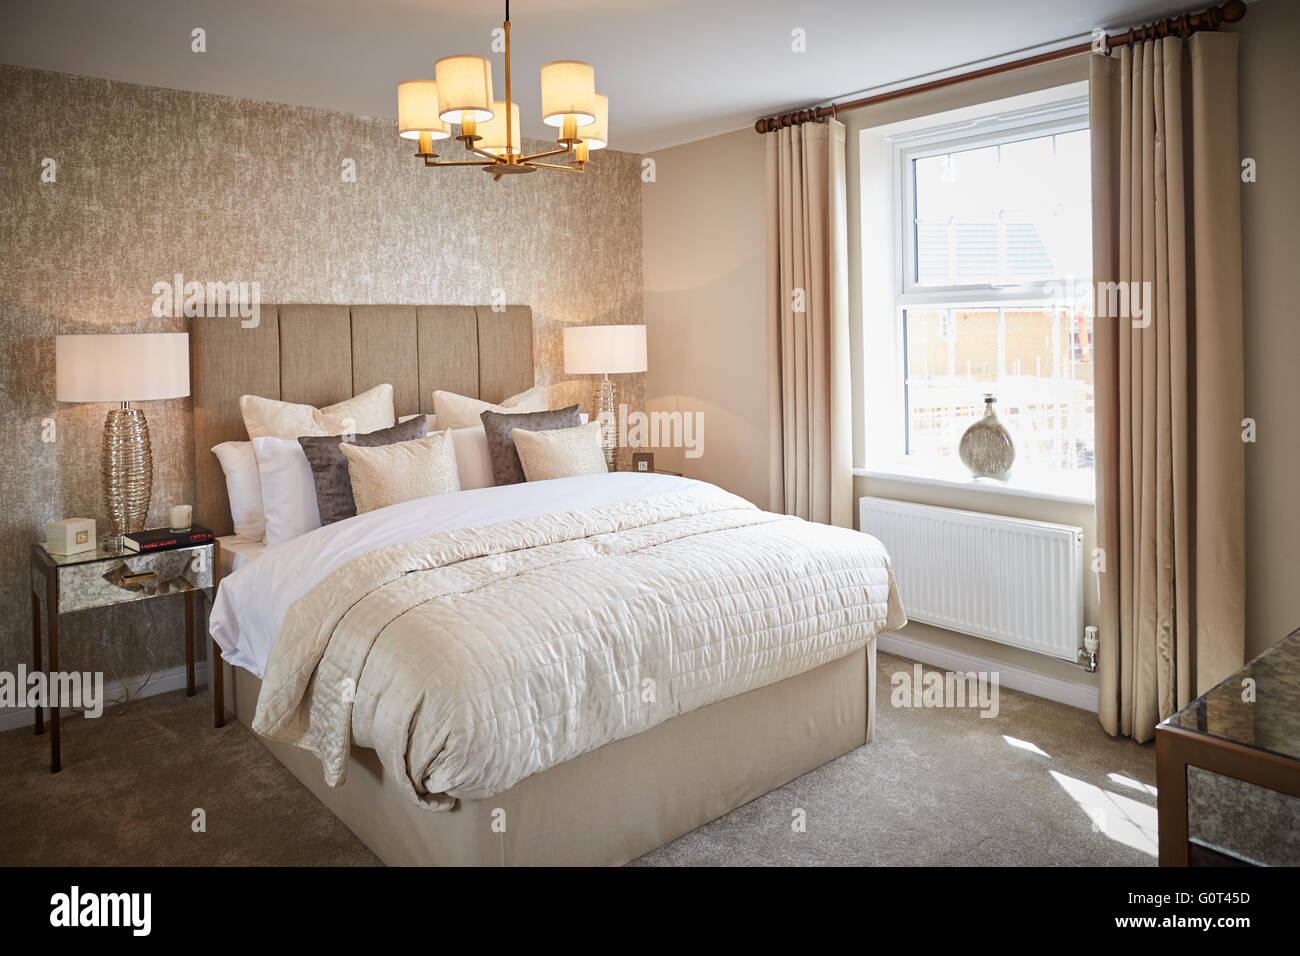 Visualizza home interno camera da letto principale crema adulti magnolia spazio calmo Suburban suburbia sobborghi villaggio città comunità locali dis Foto Stock